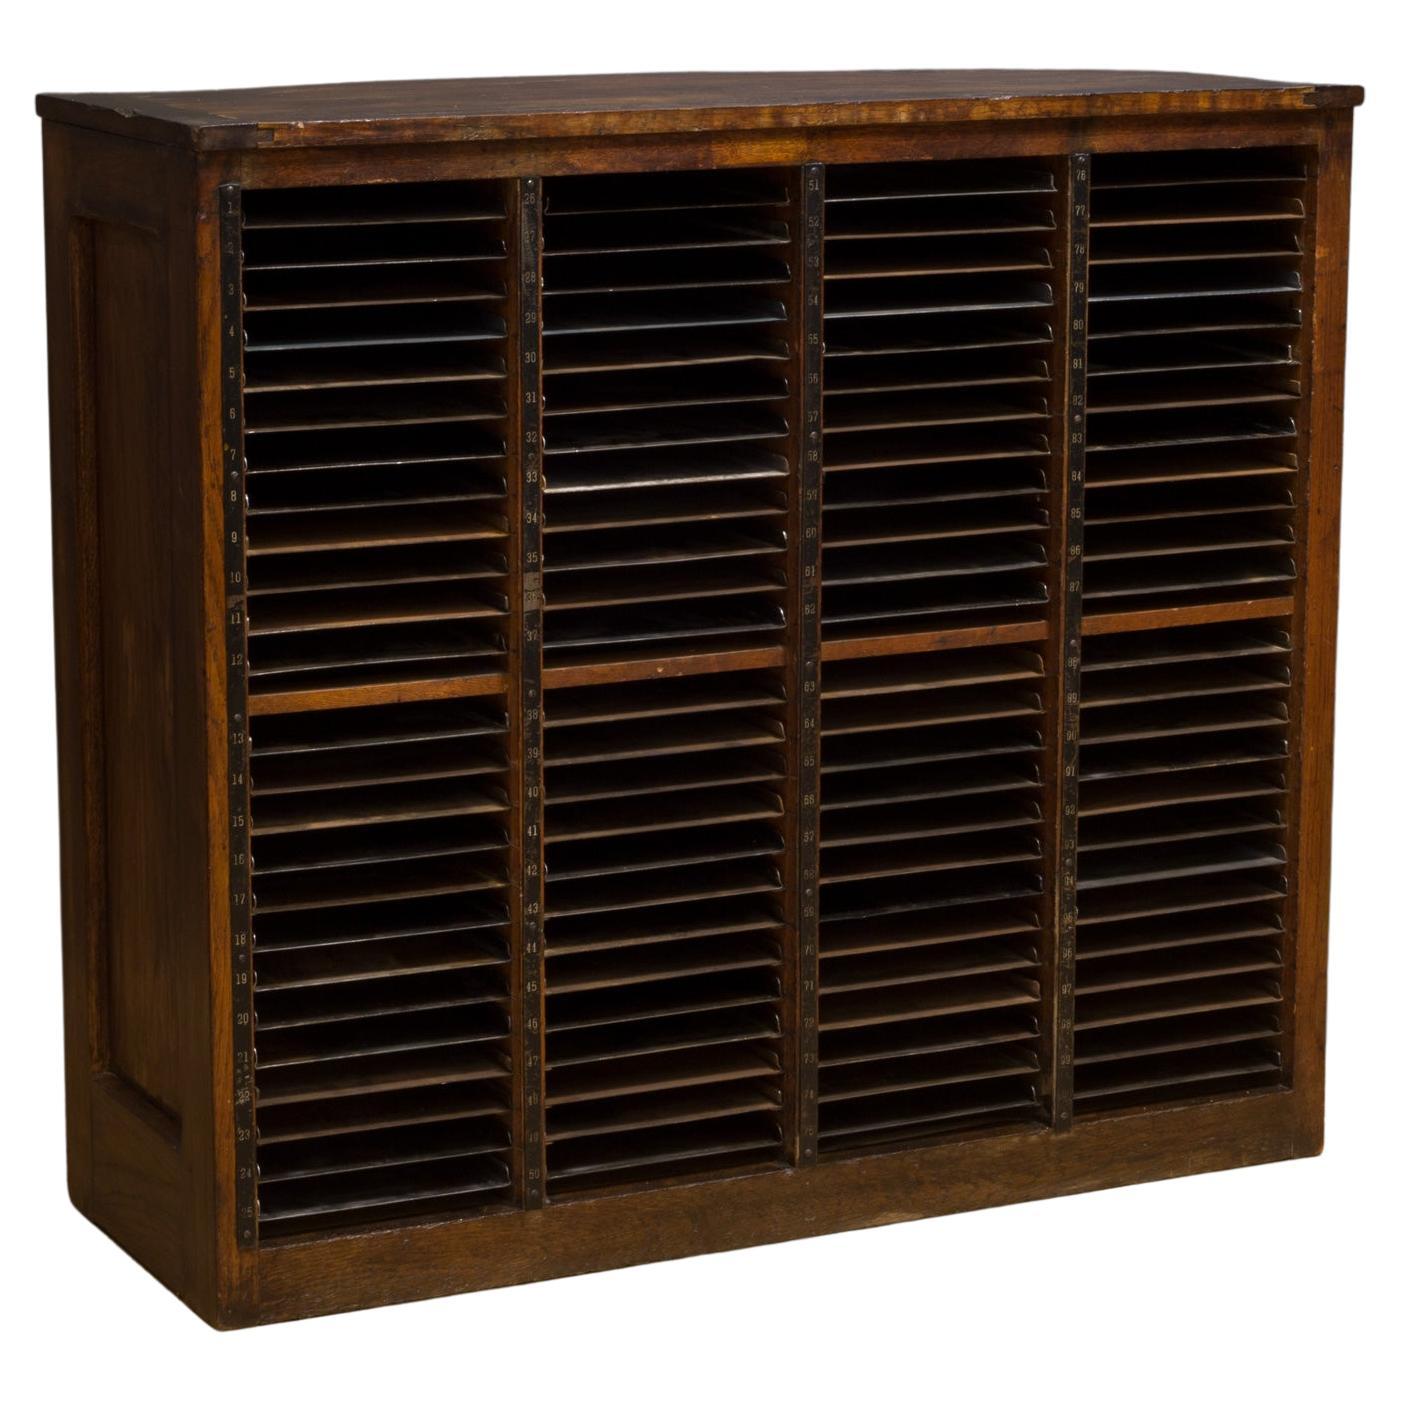 Antique Hamilton Typesetter's Storage Cabinet c.1920-1930